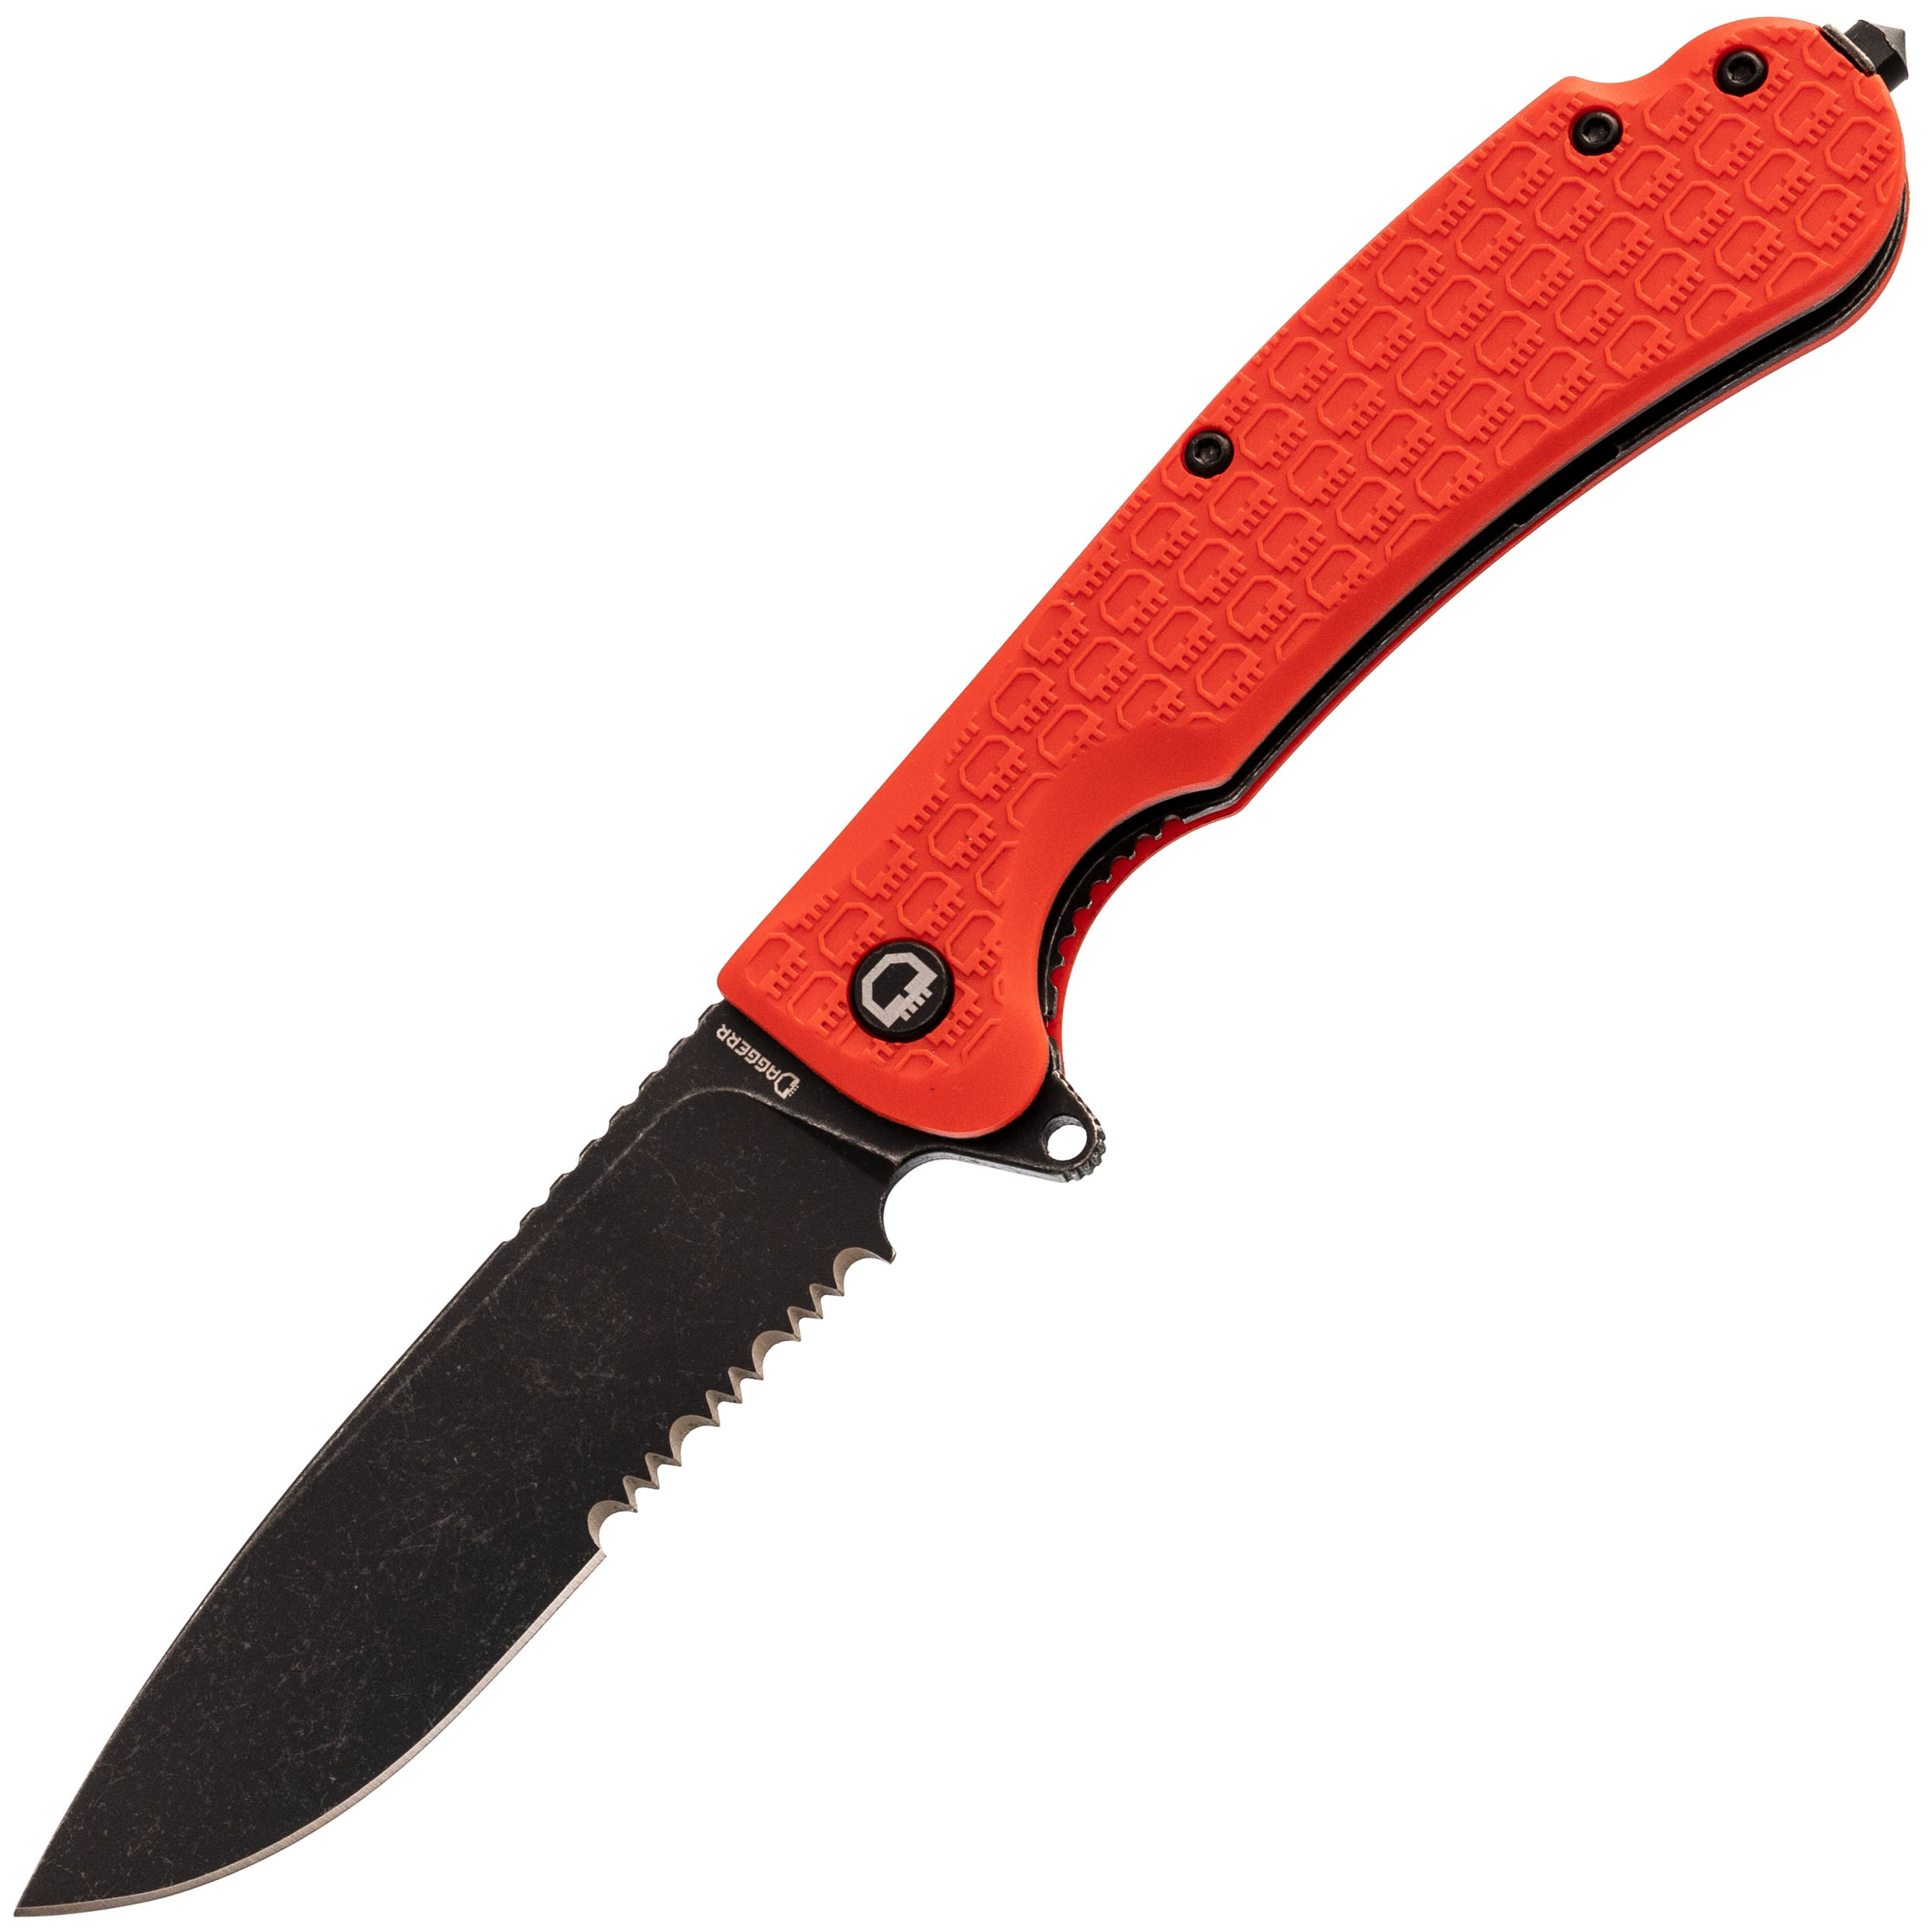 Складной нож Daggerr Wocket Orange BW Serrated, сталь 8Cr14MoV, рукоять FRN складной нож dagger parrot 3 0 all   g10